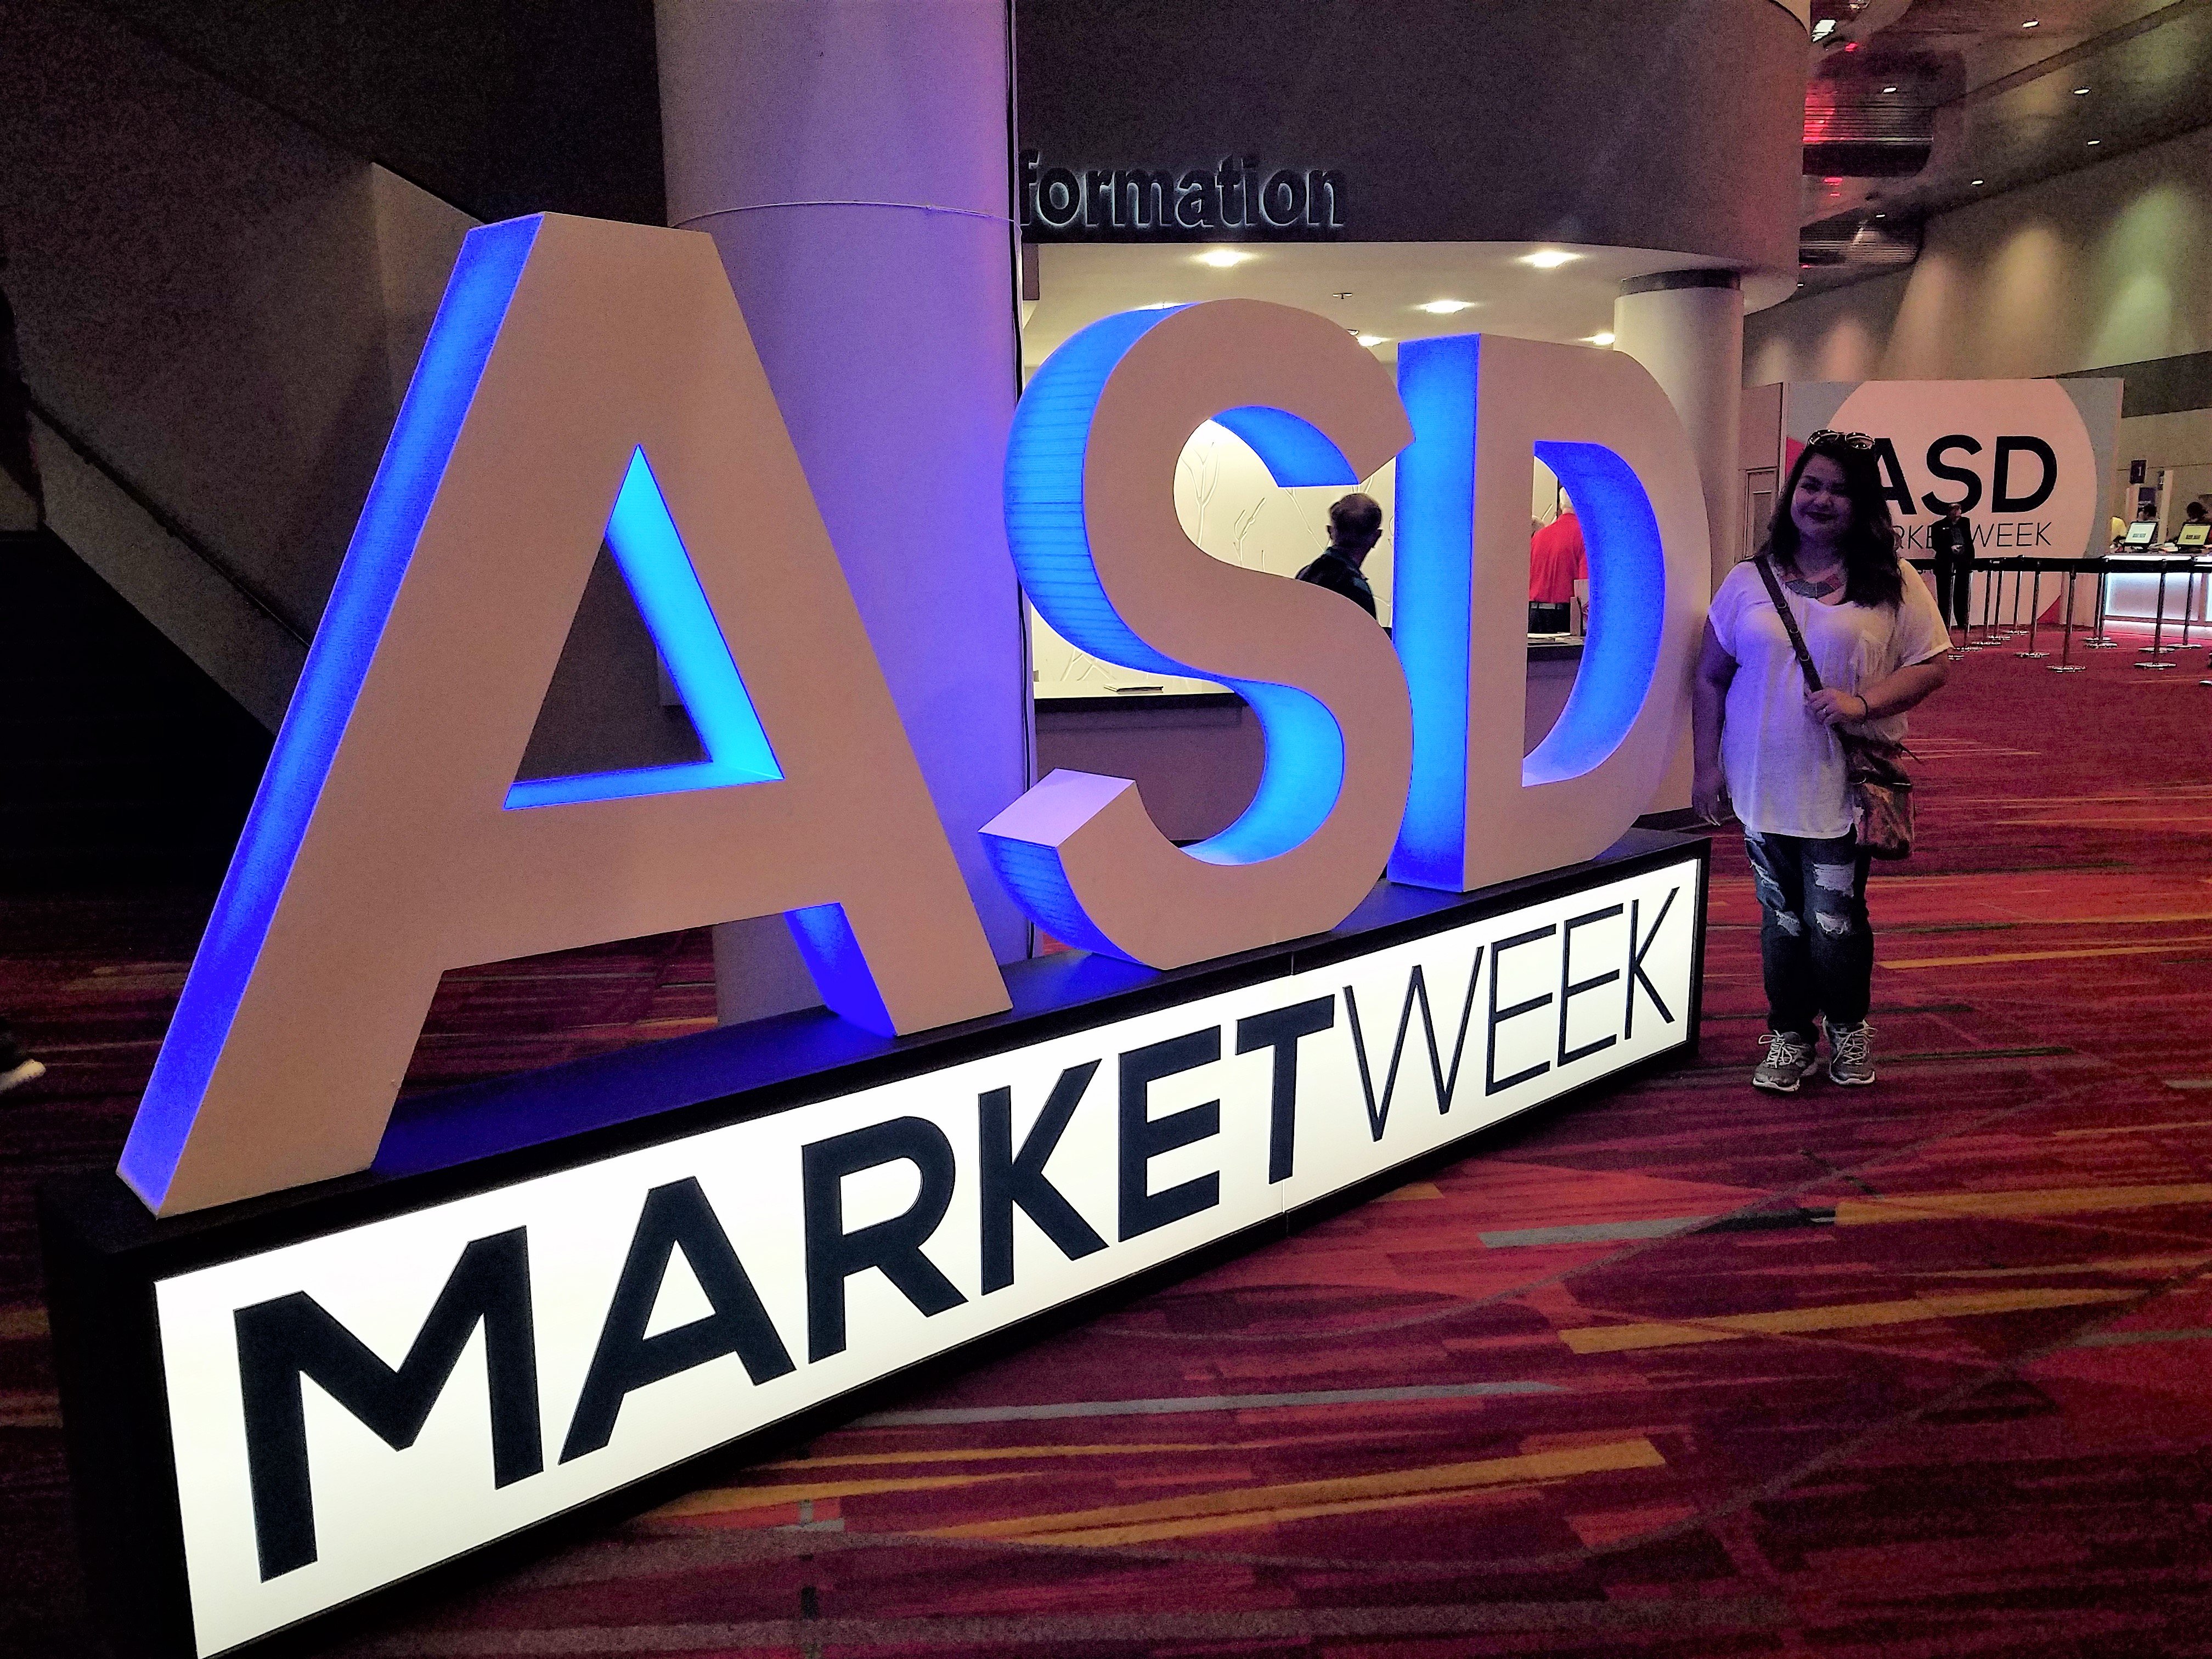 ASD Market Week 2021